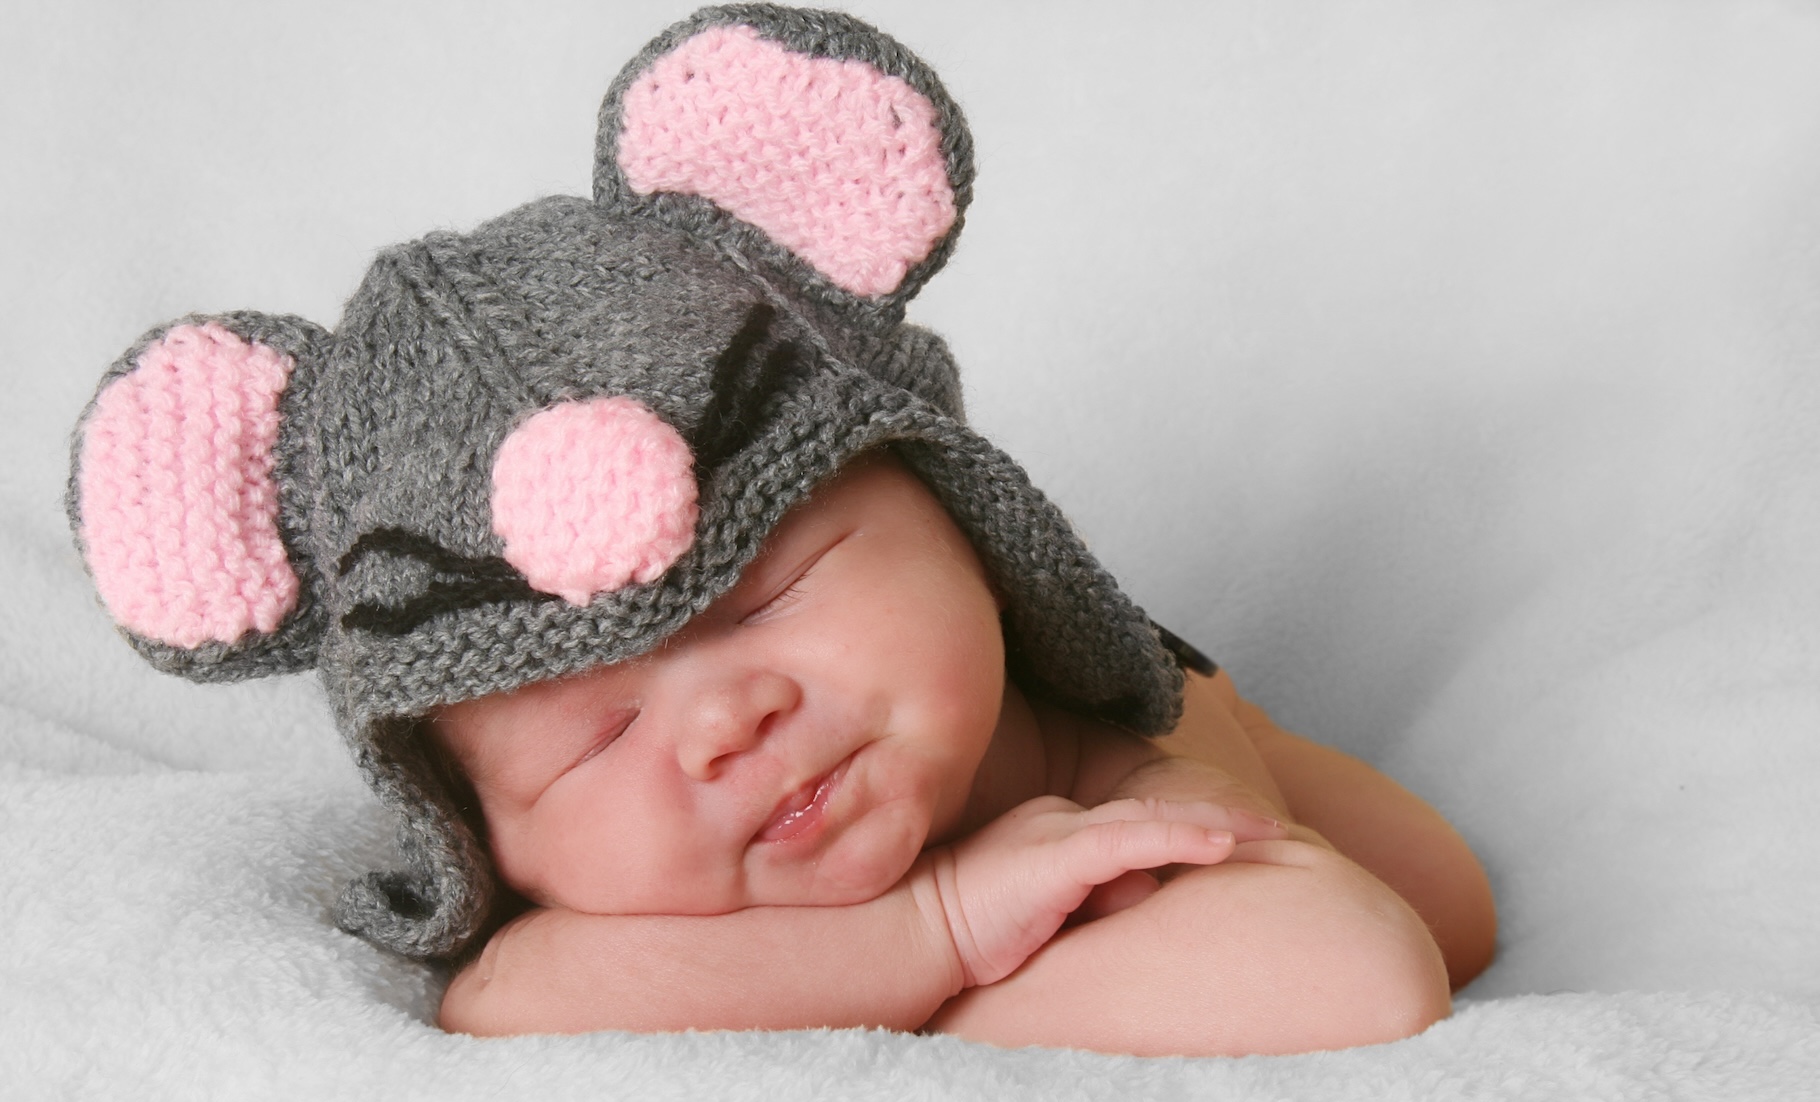 Des chercheurs de l’université Johns Hopkins (États-Unis) avancent que les souris font preuve d’une intelligence d’apprentissage semblable à celle de nos bébés. © Barbara Helgason, Adobe Stock